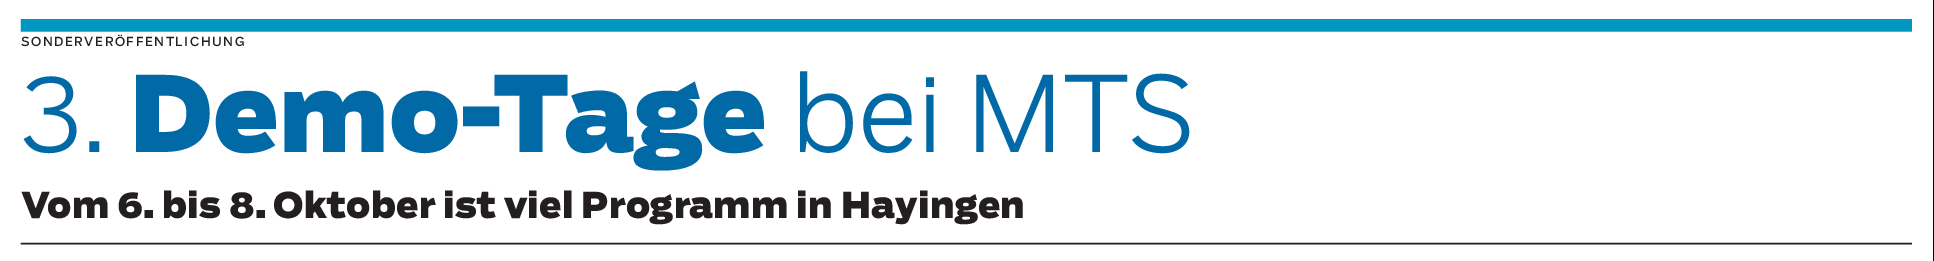 MTS-Innovationstag in Hayingen am 6. Oktober: Geselligkeit, Genuss und Abenteuer